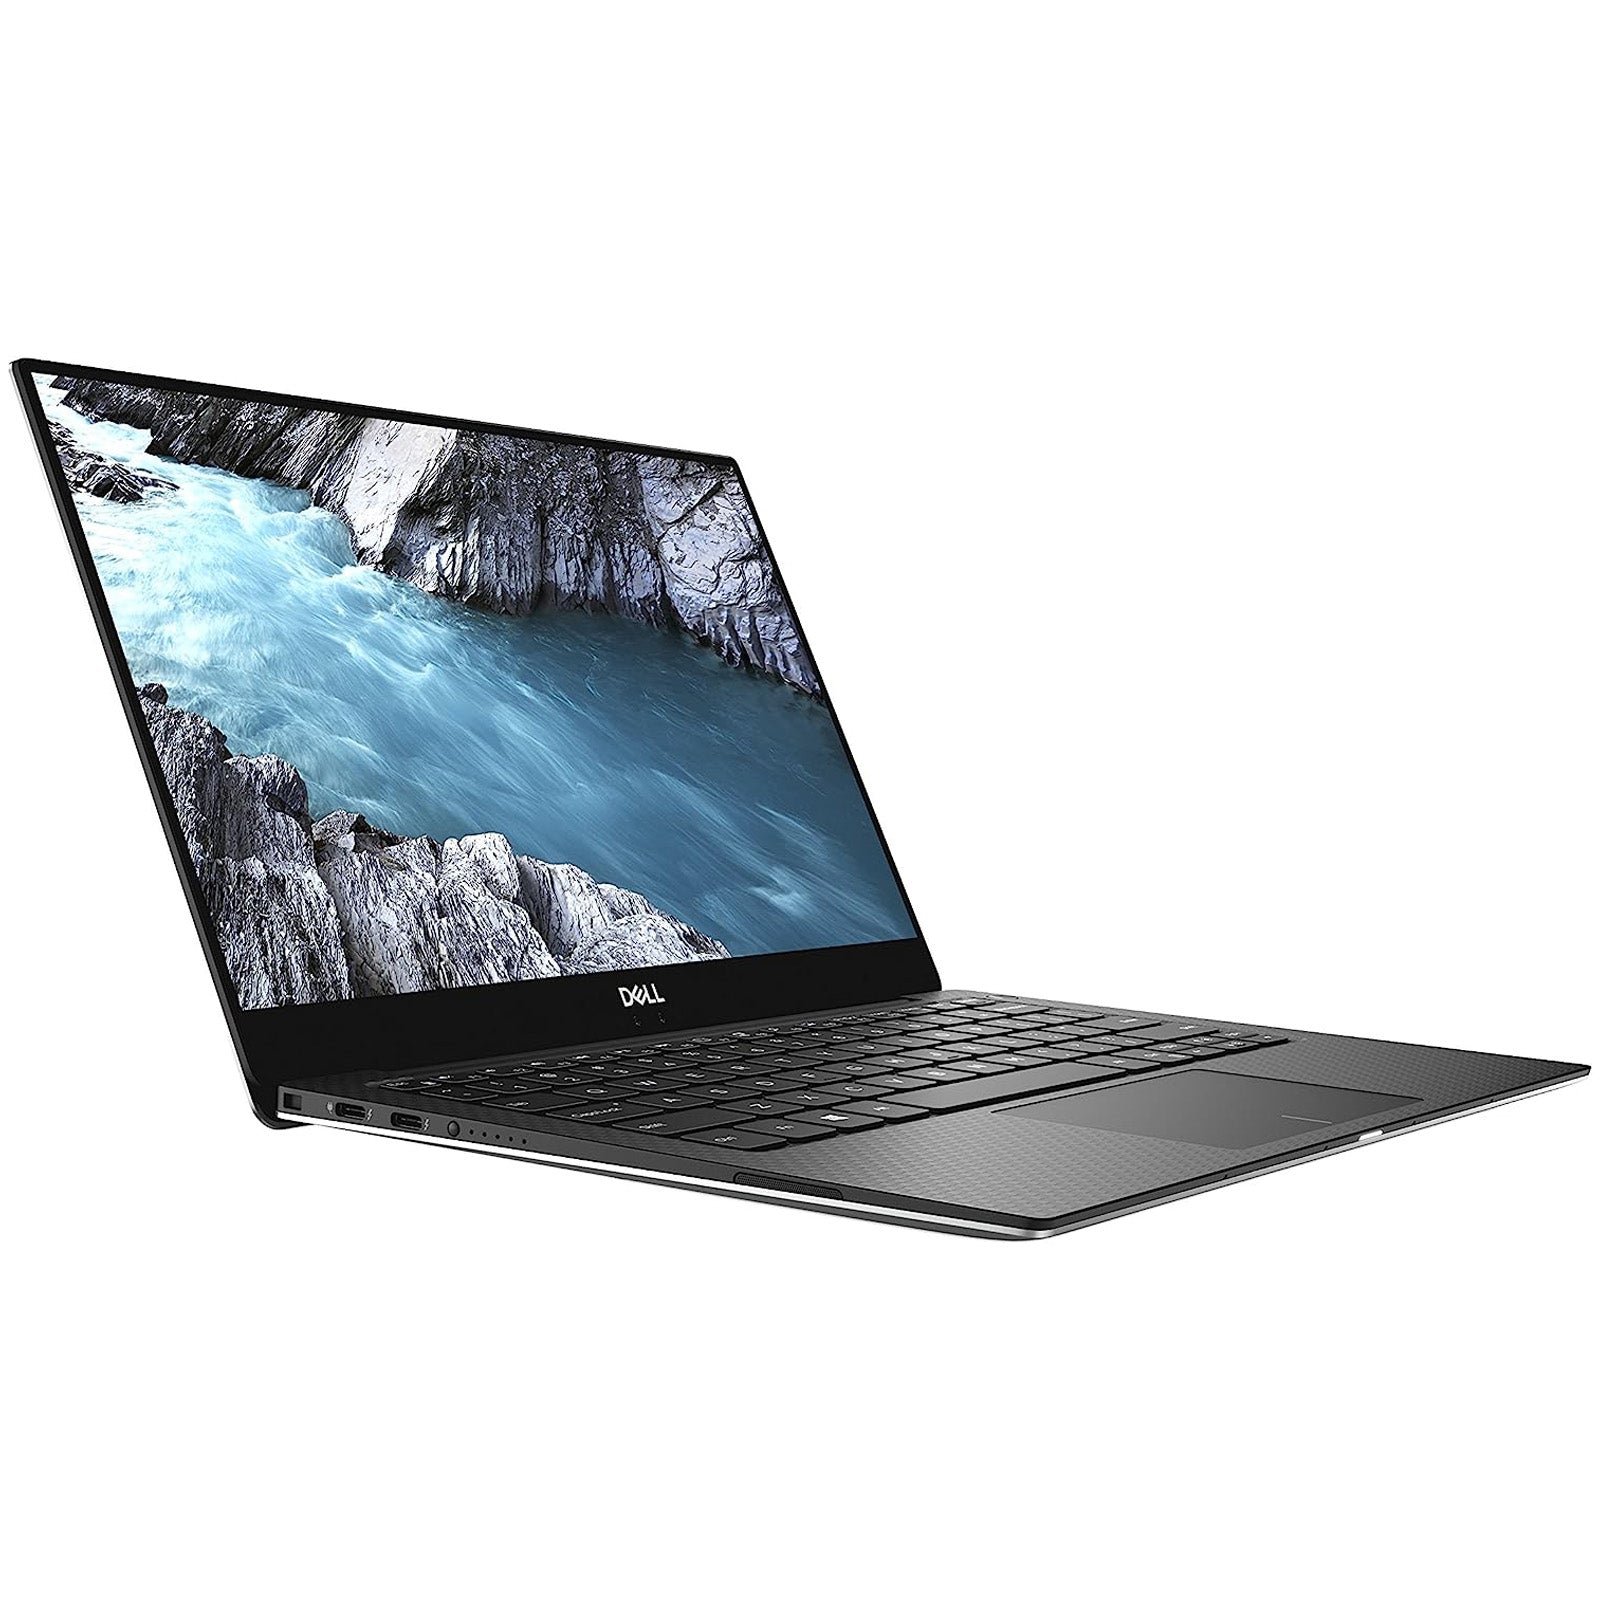 Dell XPS 13 9370 Laptop: Intel Core i7-8550U, 256GB SSD, 8GB